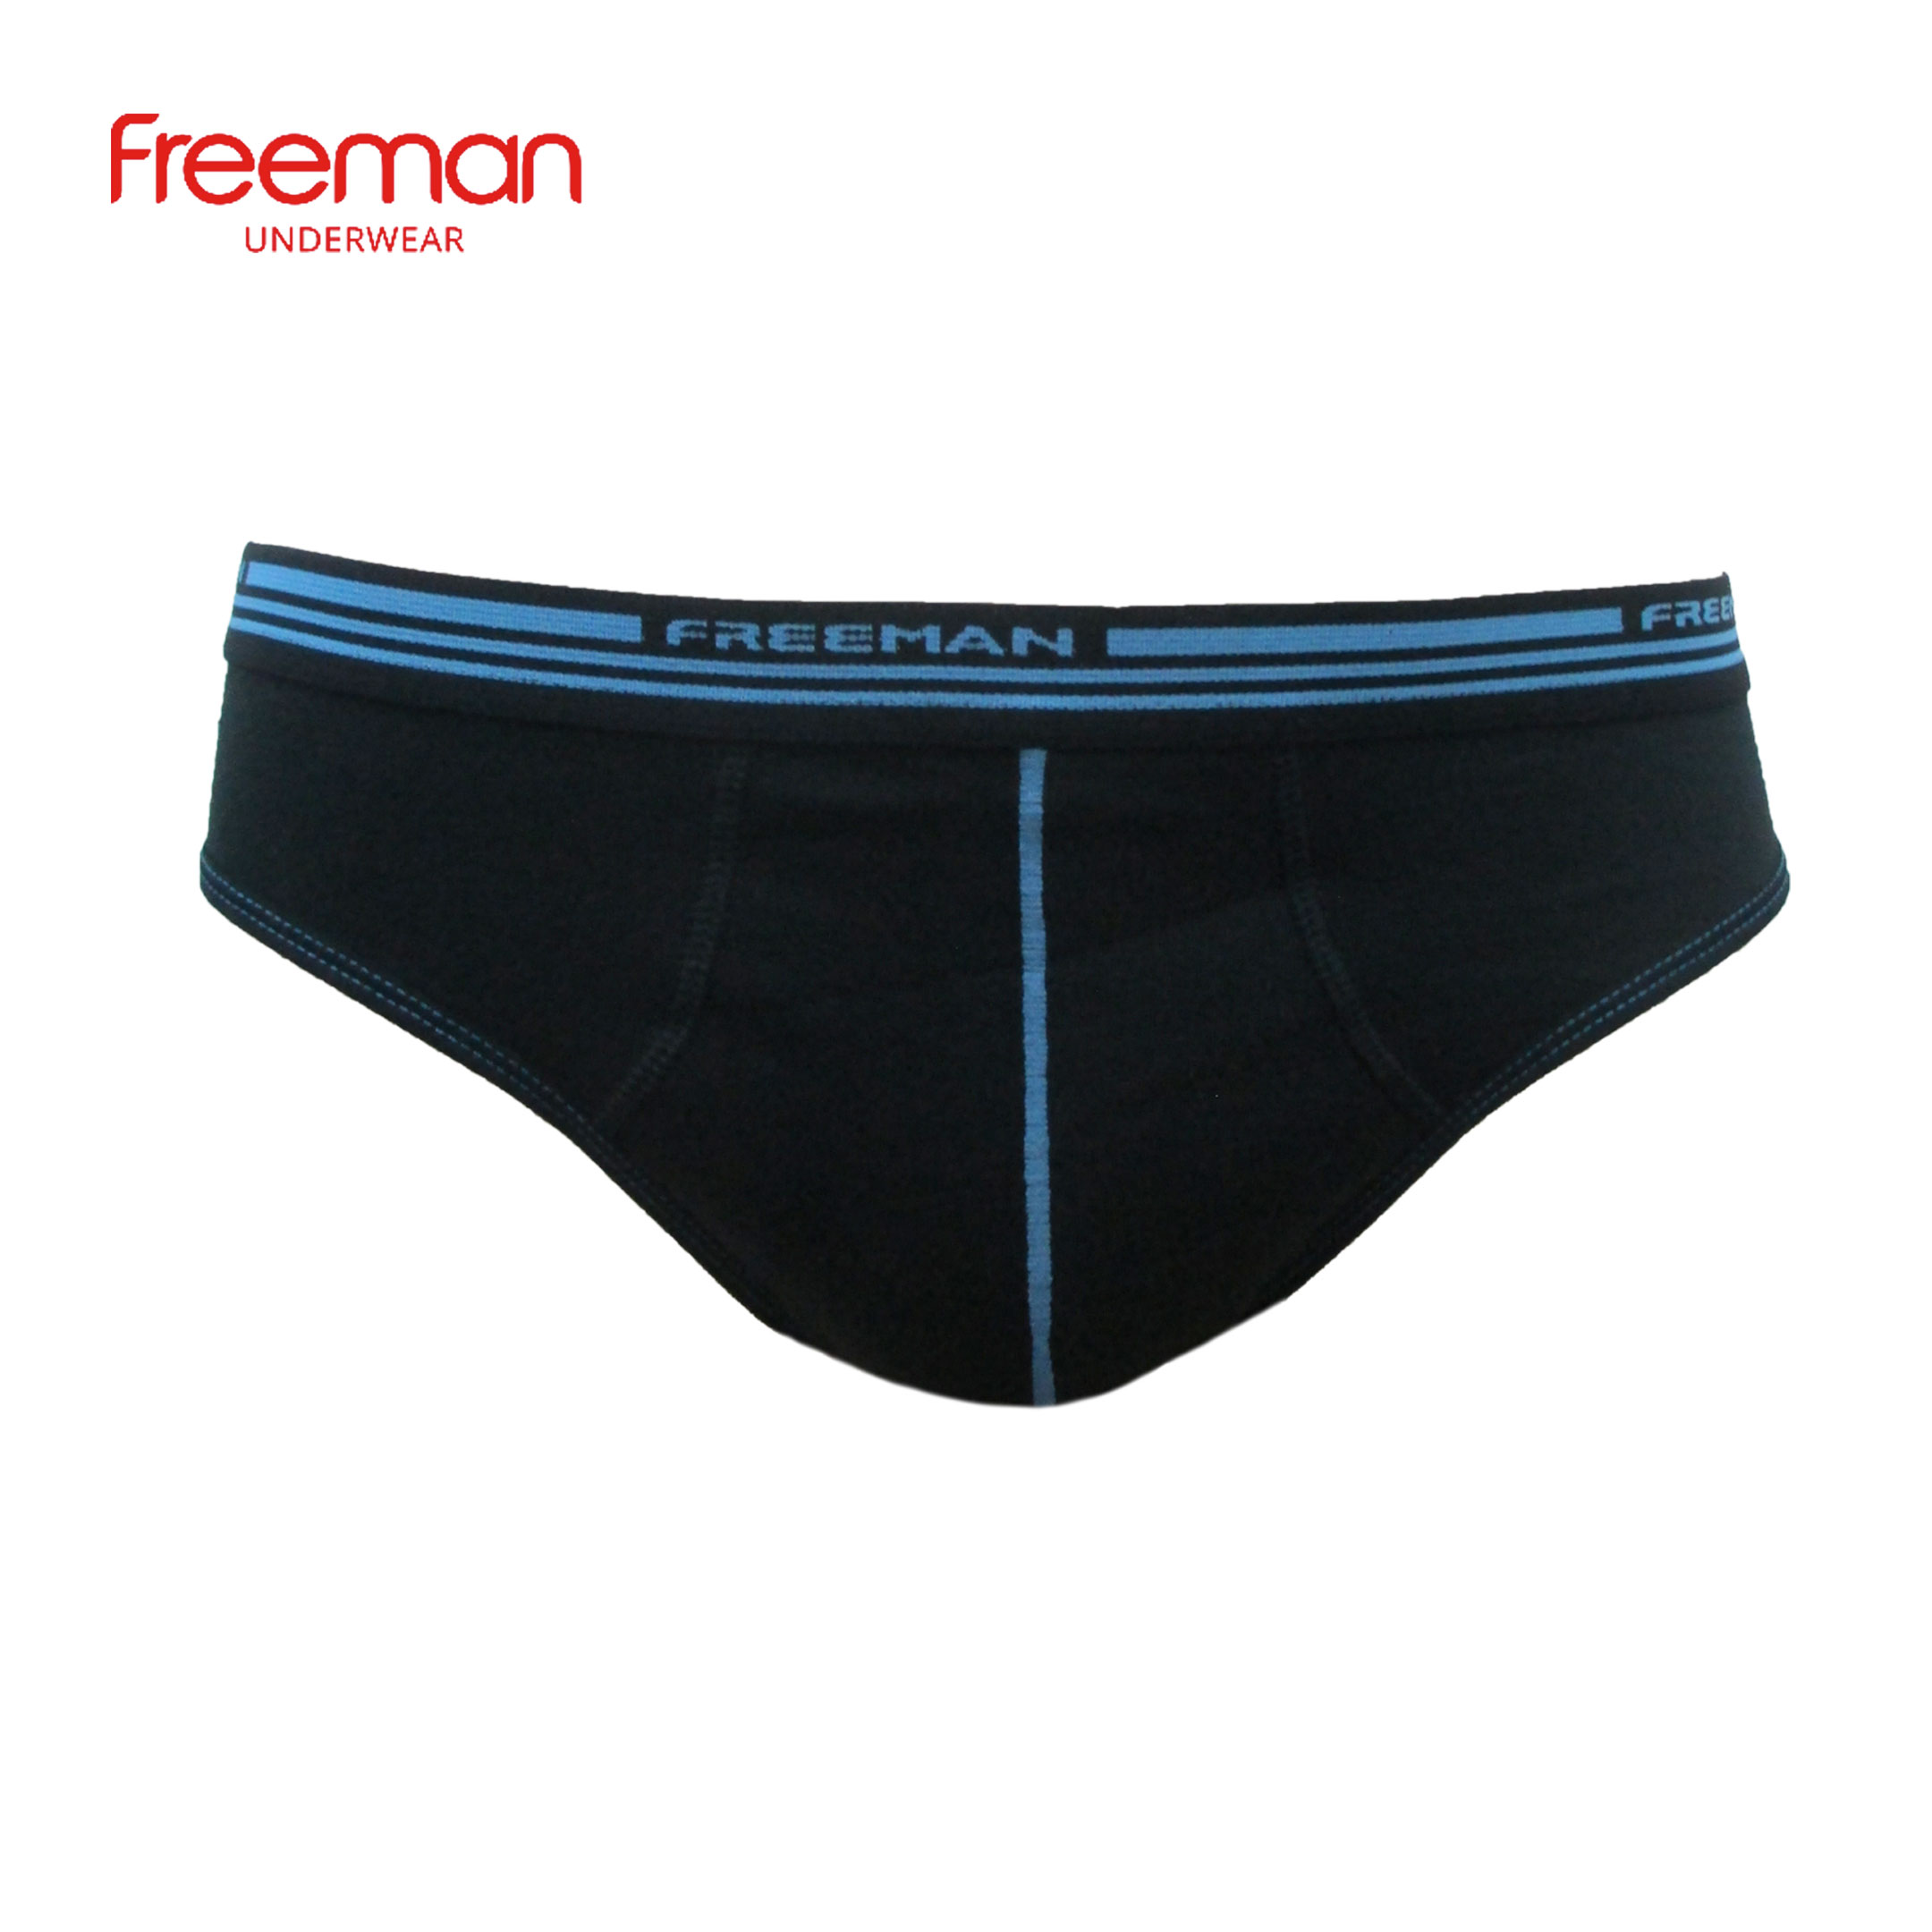 Quần lót nam Freeman vải cotton thấm hút mồ hôi tốt, thiết kế thoải mái thoáng mát 6039